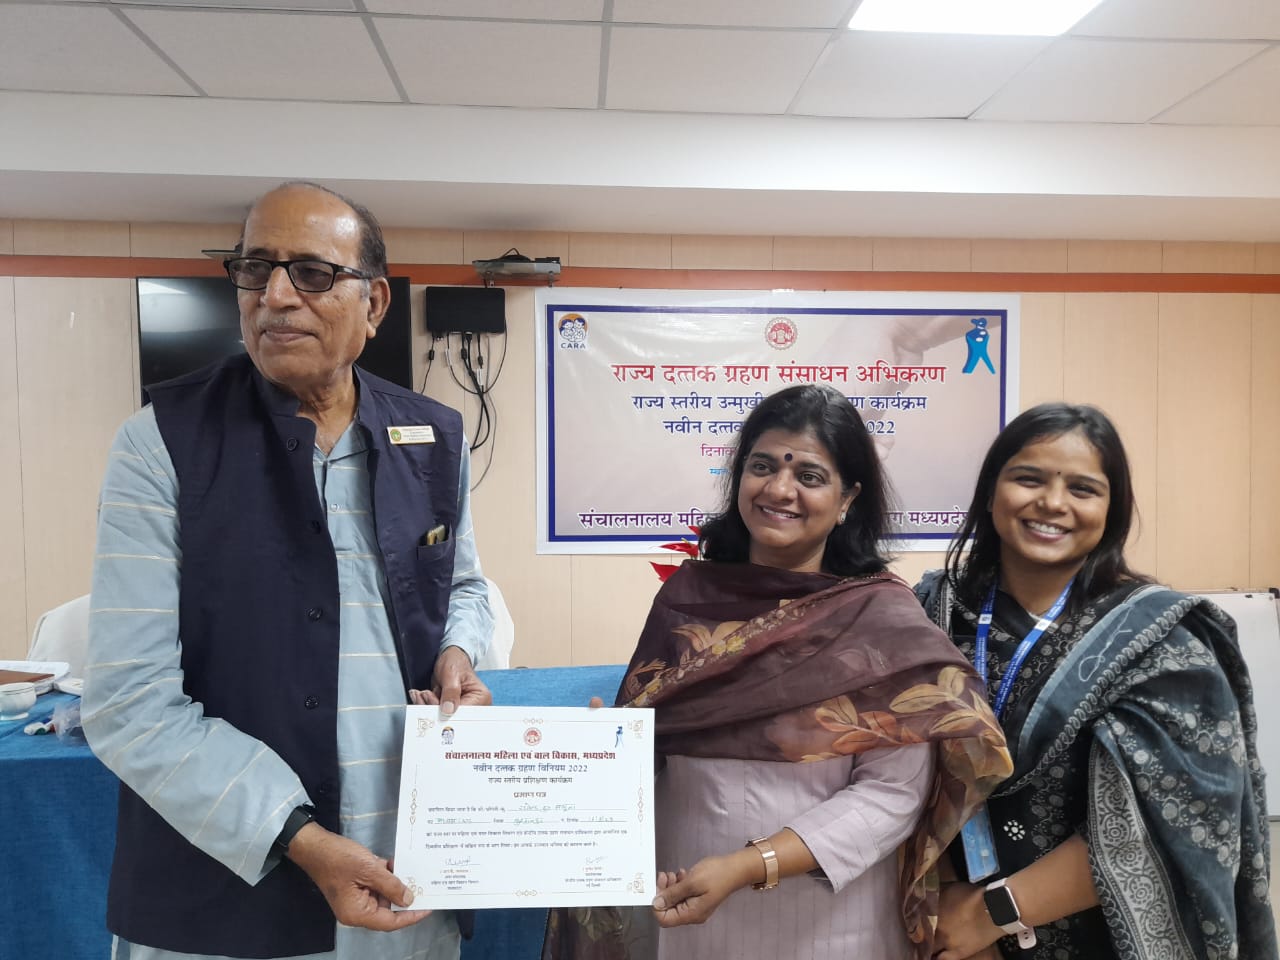 बाल कल्याण समिति बुरहानपुर के अध्यक्ष राजेंद्र कुमार सलूजा ने भोपाल में आयोजित राज्य स्तरीय प्रशिक्षण शिविर में की सहभागिता | New India Times